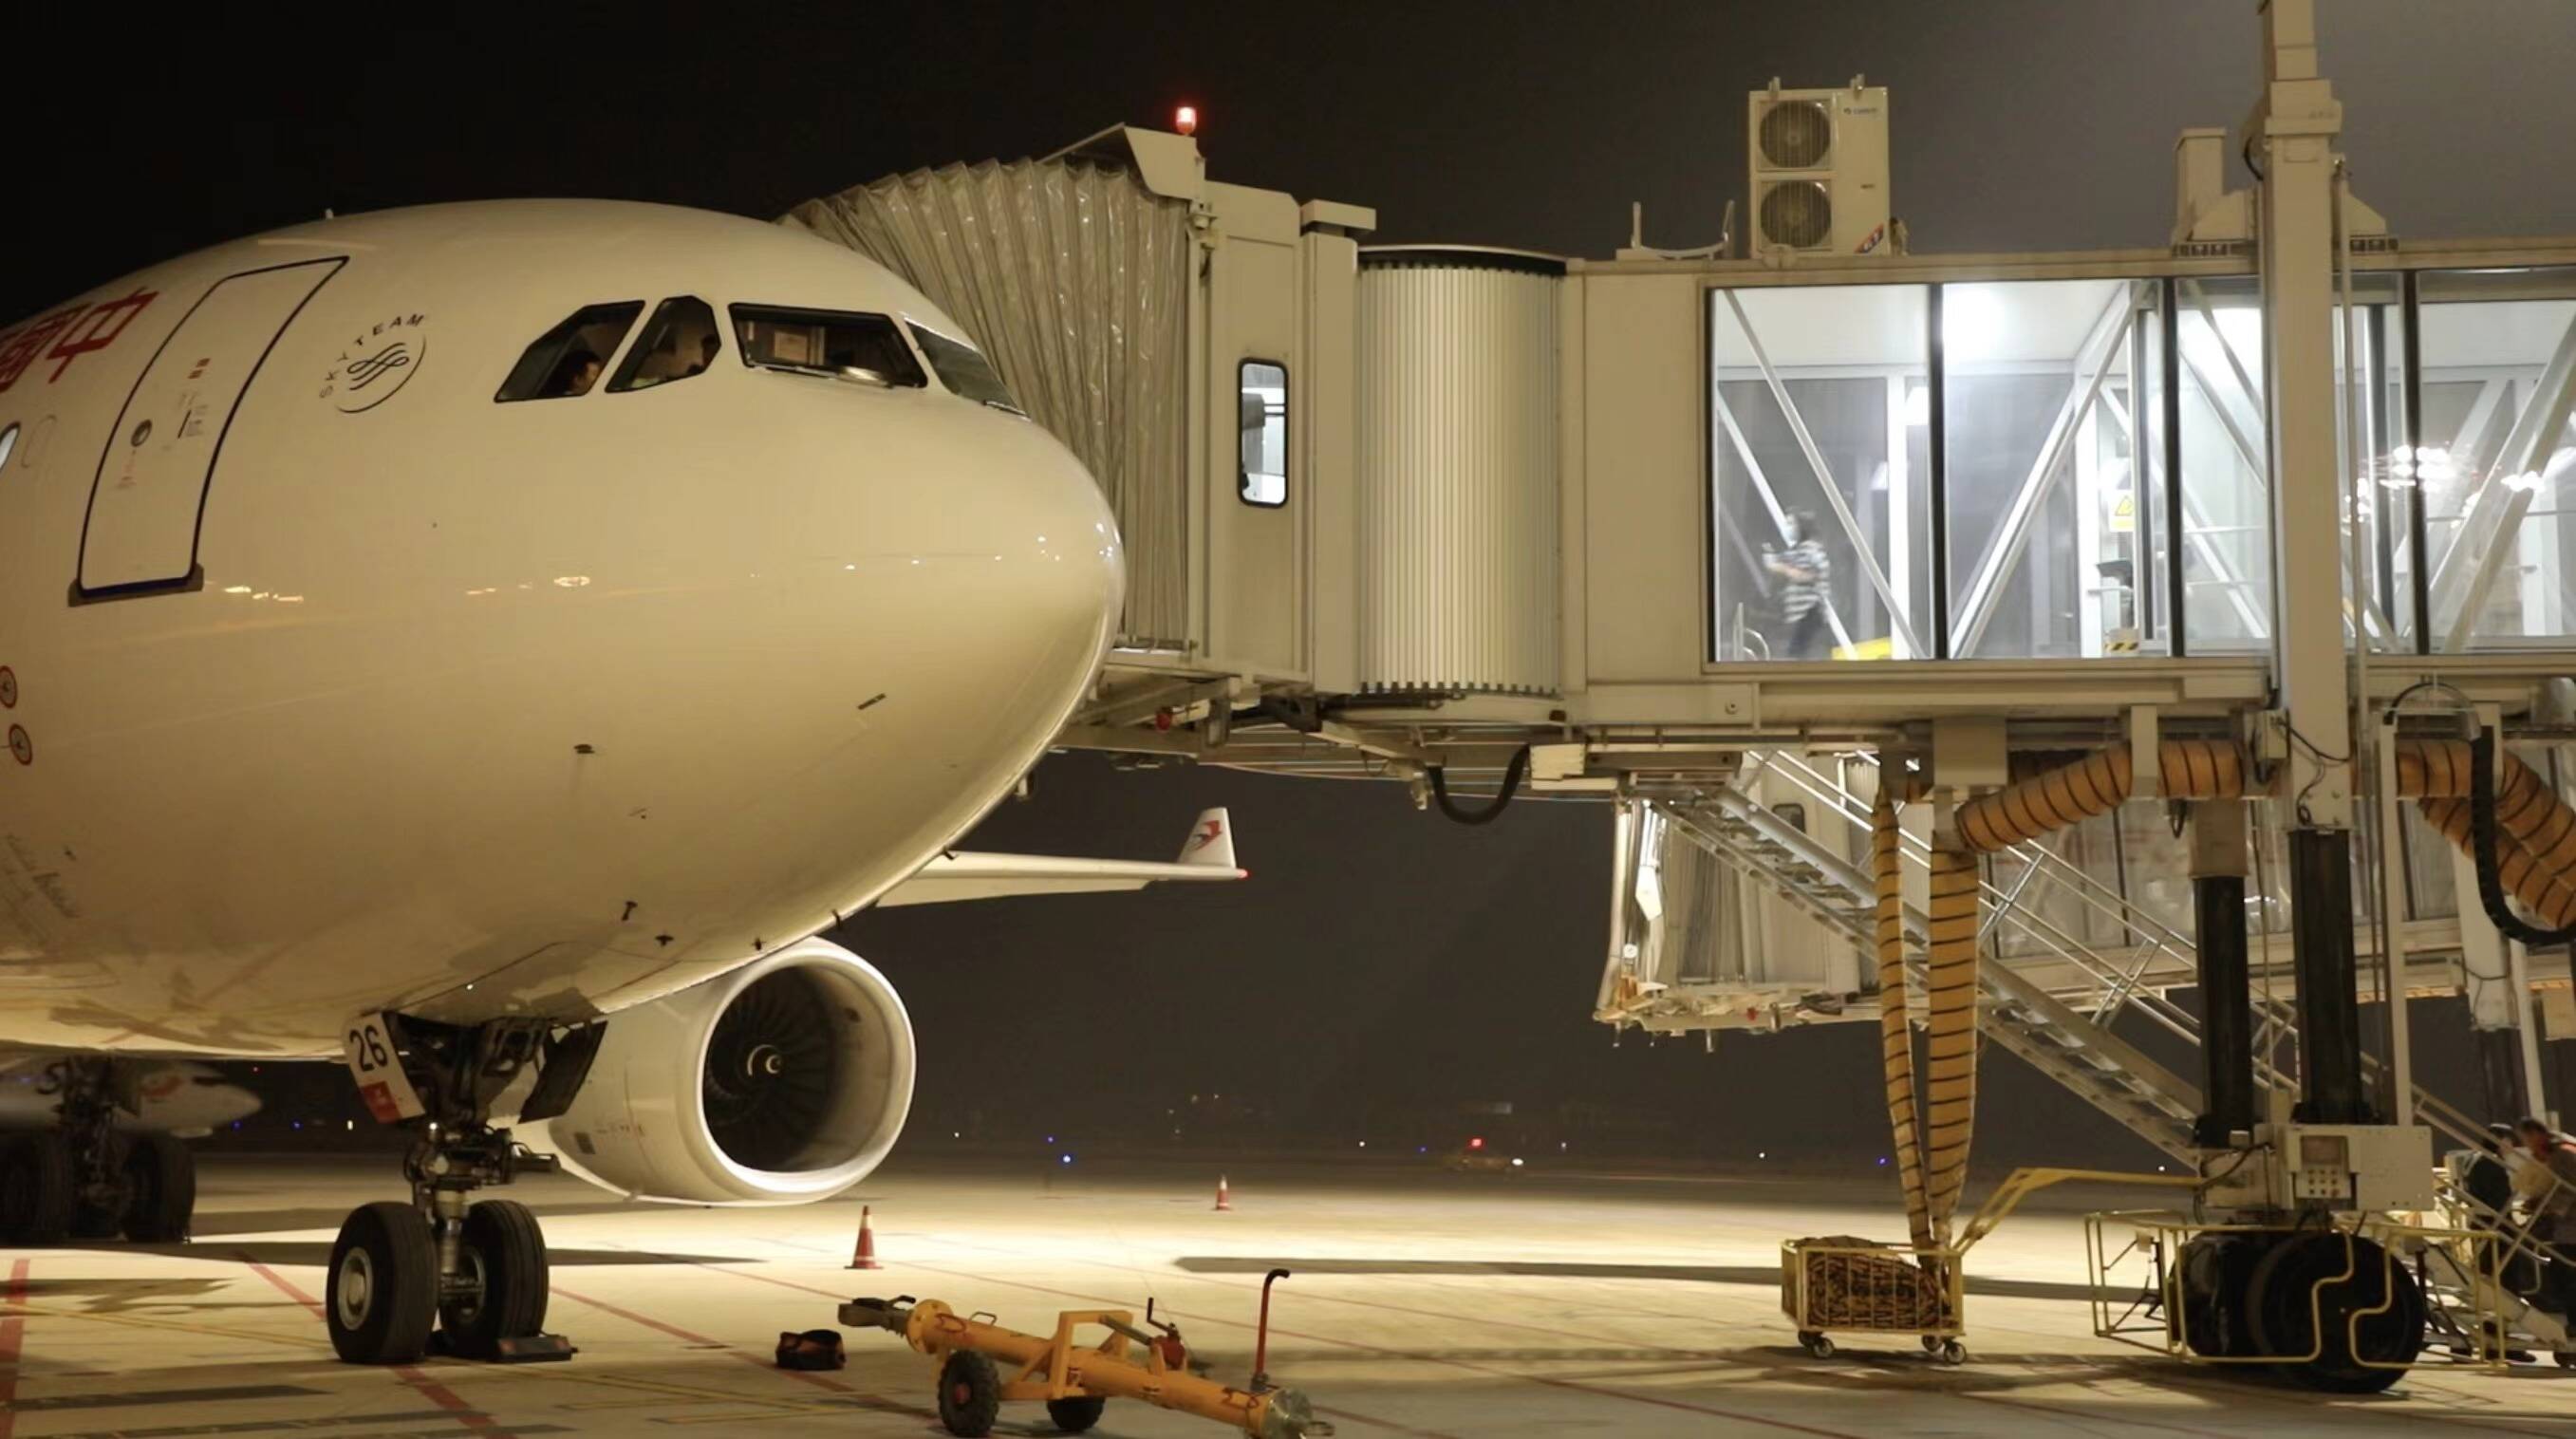 济南机场国际中转服务保障能力全面升级